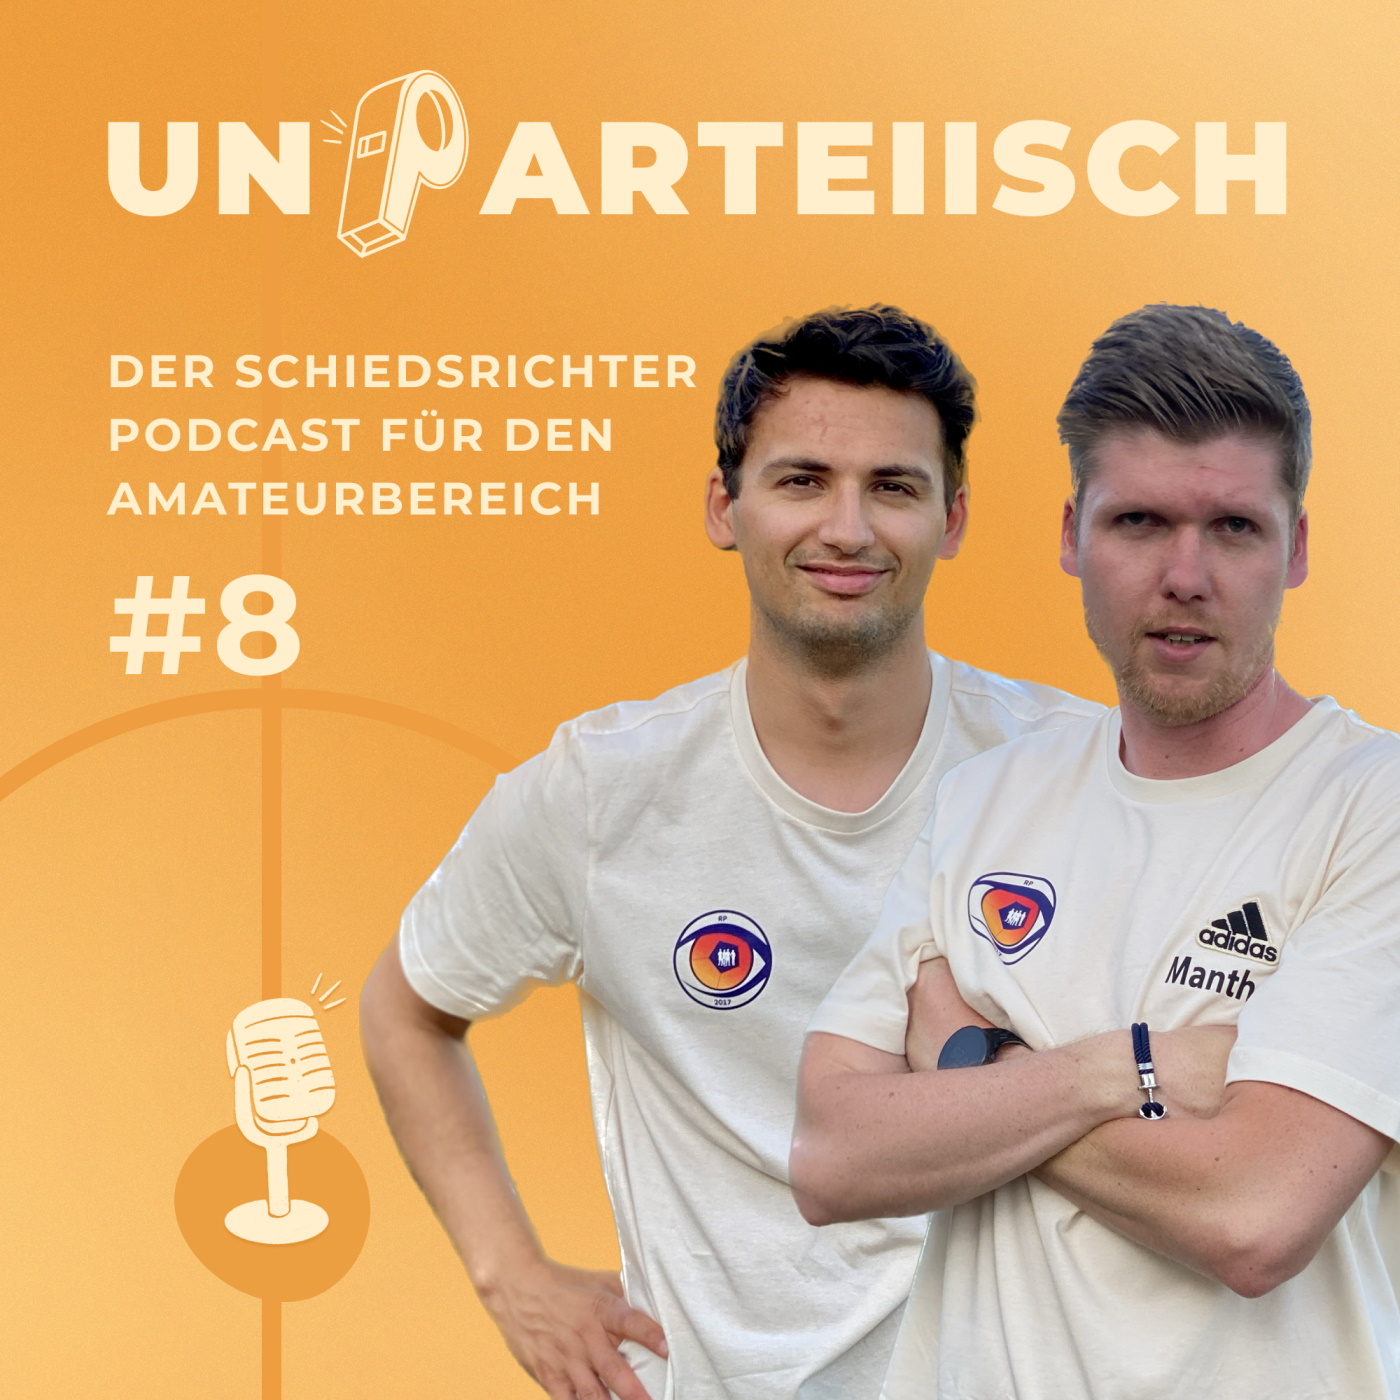 #8 Das Schiedsrichterpraktikum – Doppelinterview mit Dajinder Pabla und Vincent Manthey